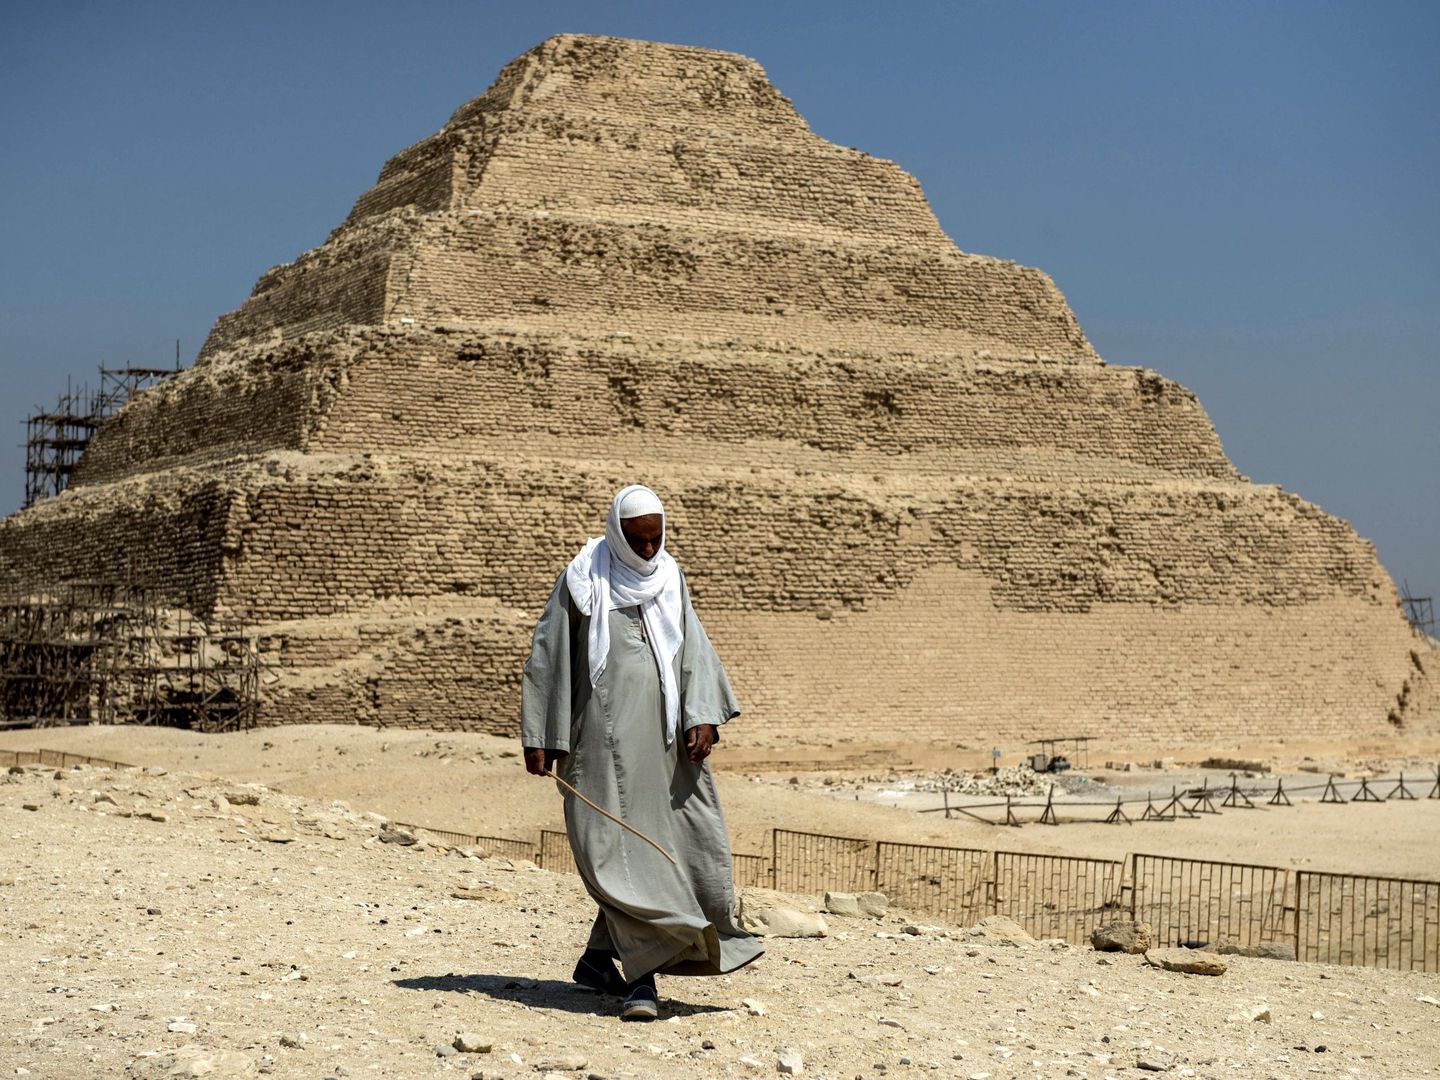 Un egipcio pasa caminando por delante de la pirámide escalonada de Zoser.  EFE / MOHAMED HOSSAM